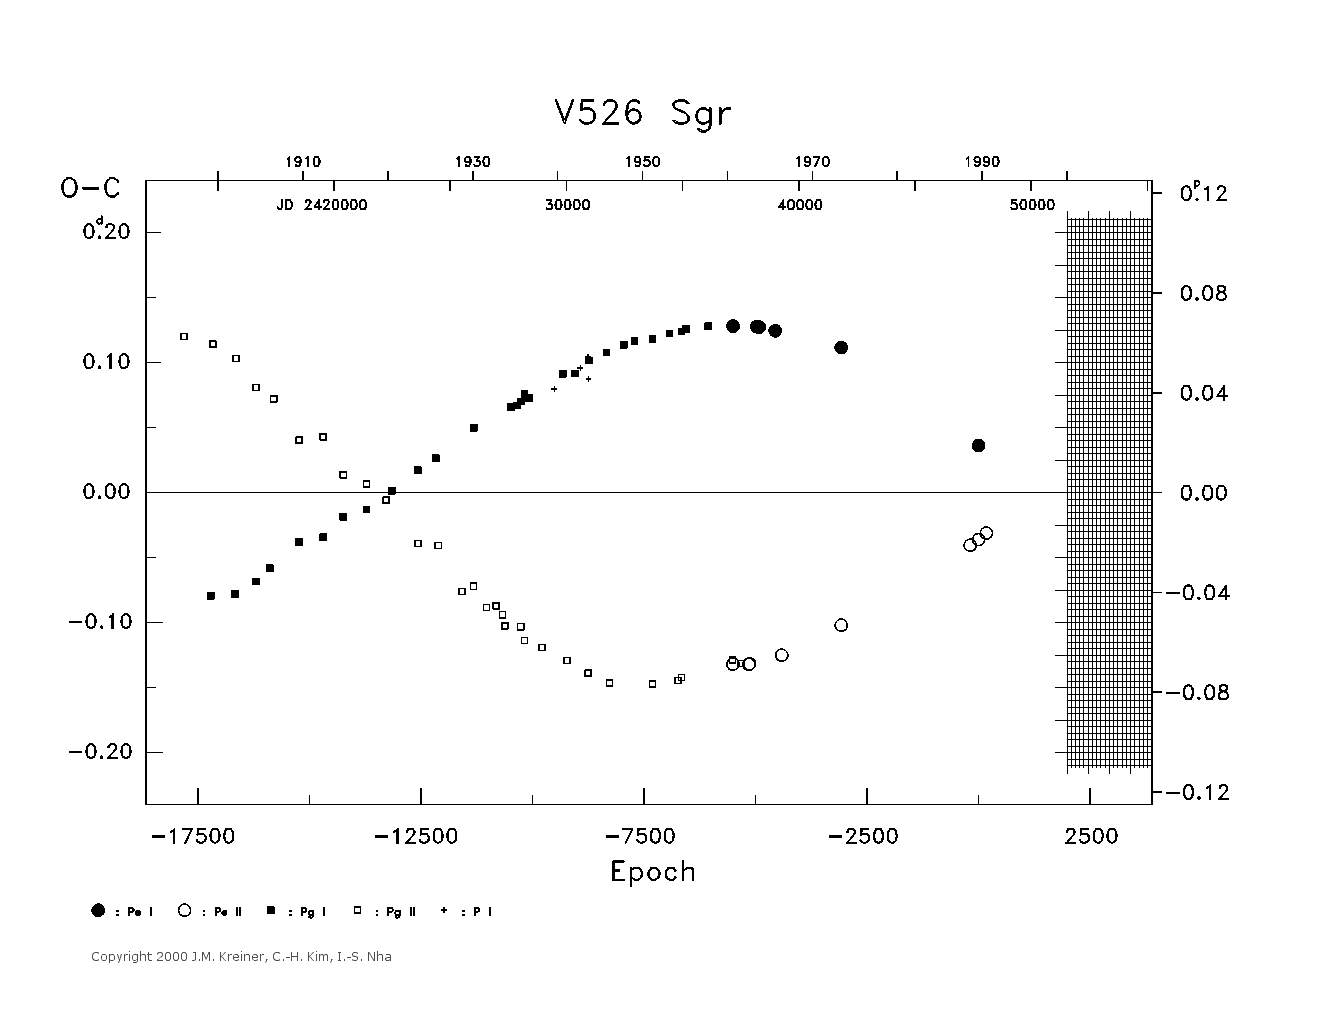 [IMAGE: large V526 SGR O-C diagram]